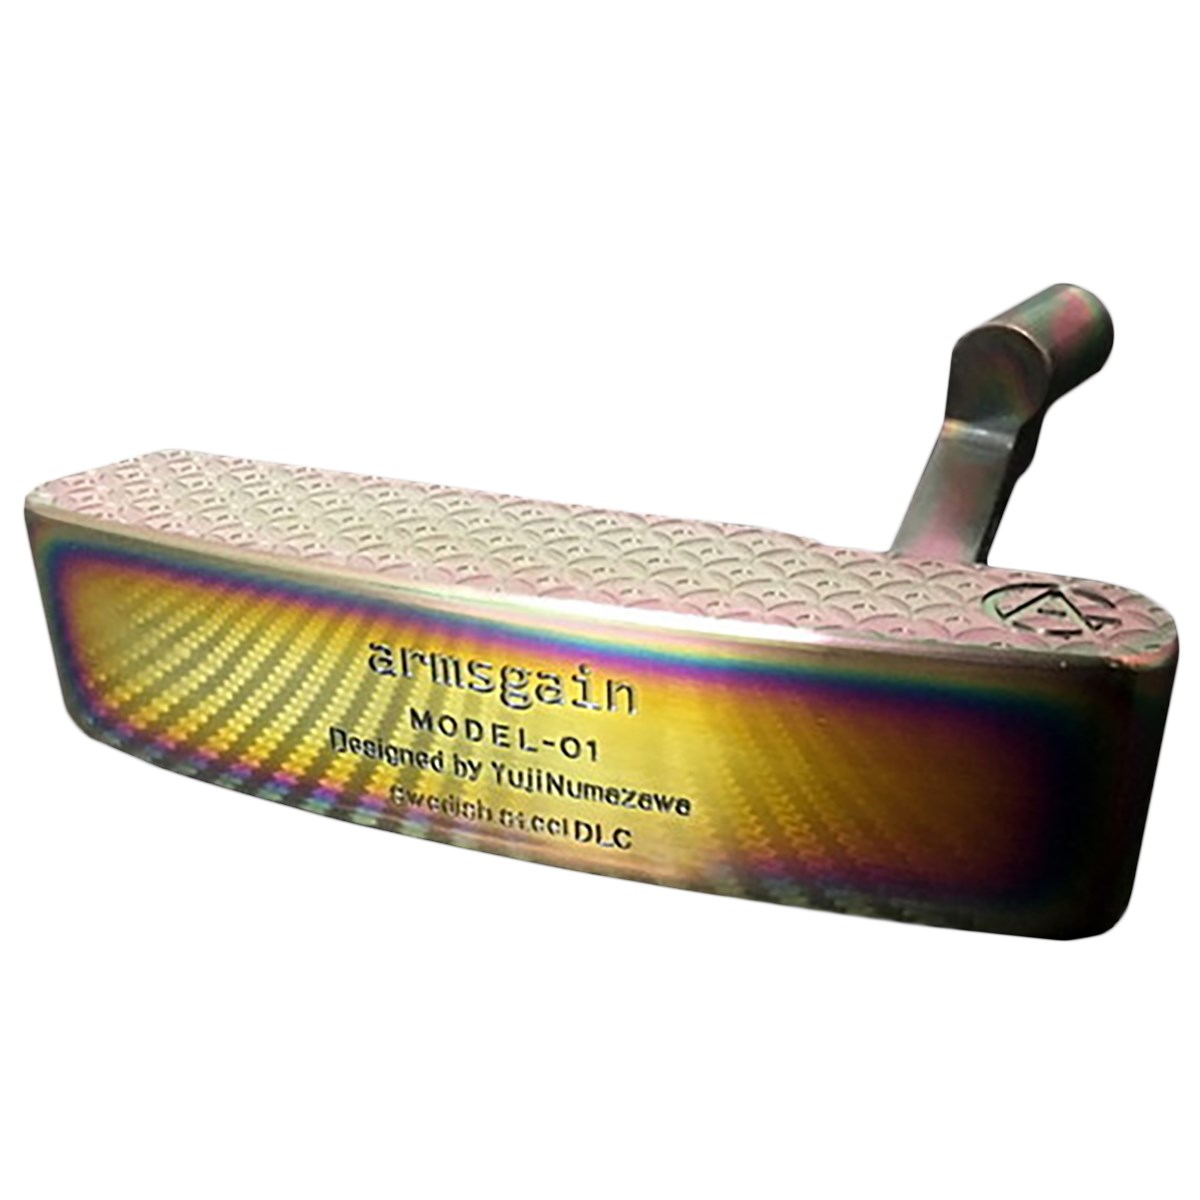 アームスゲイン Model-01 響スティールシリーズ DLC Rainbow コーティング仕様 ゴルフの大画像